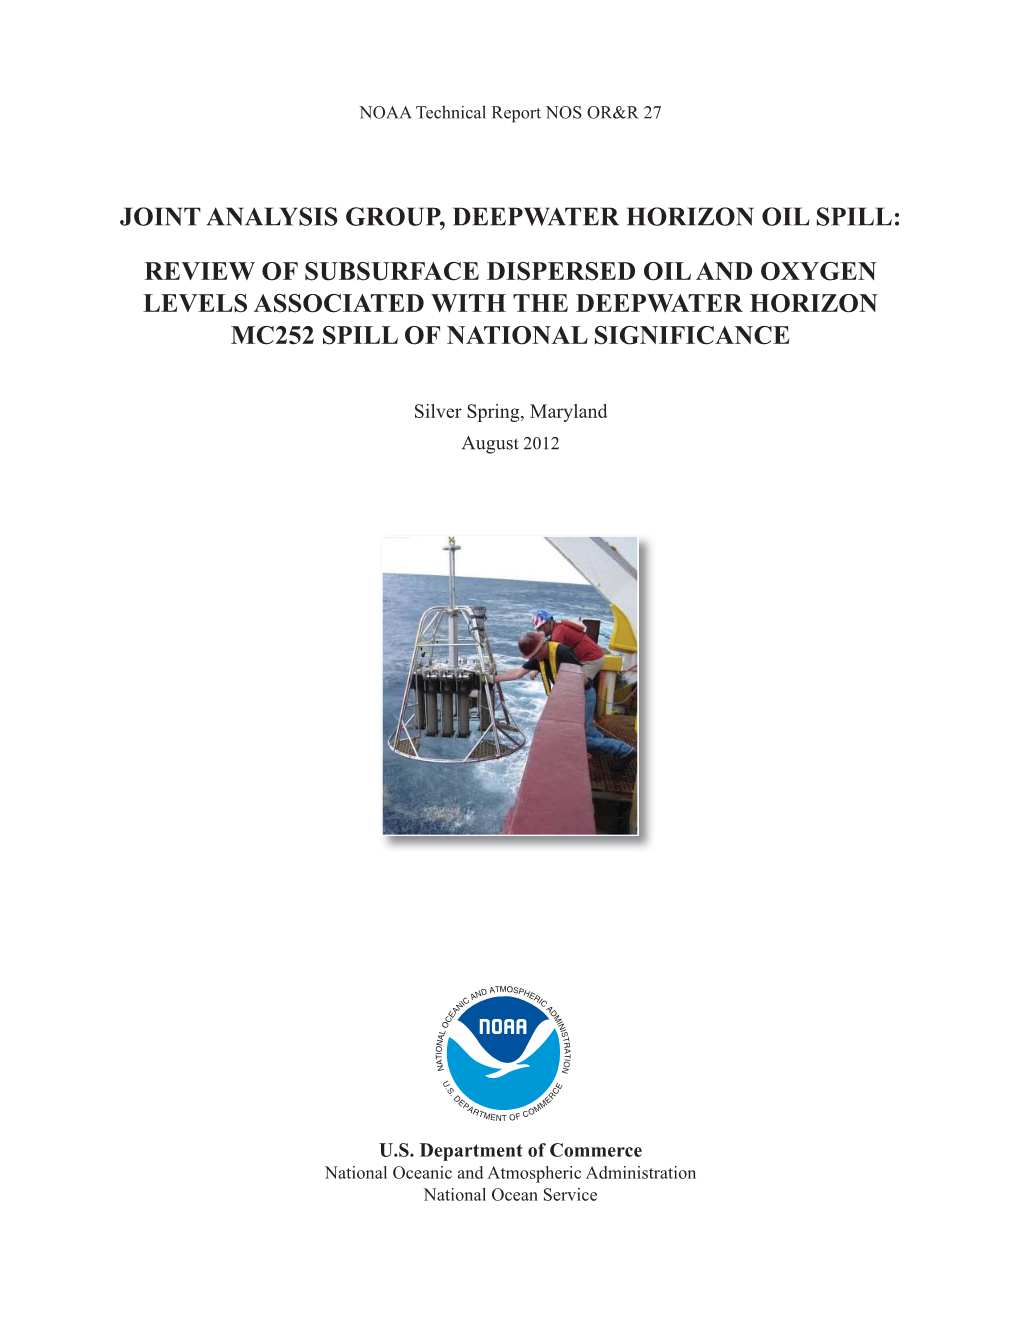 Joint Analysis Group, Deepwater Horizon Oil Spill